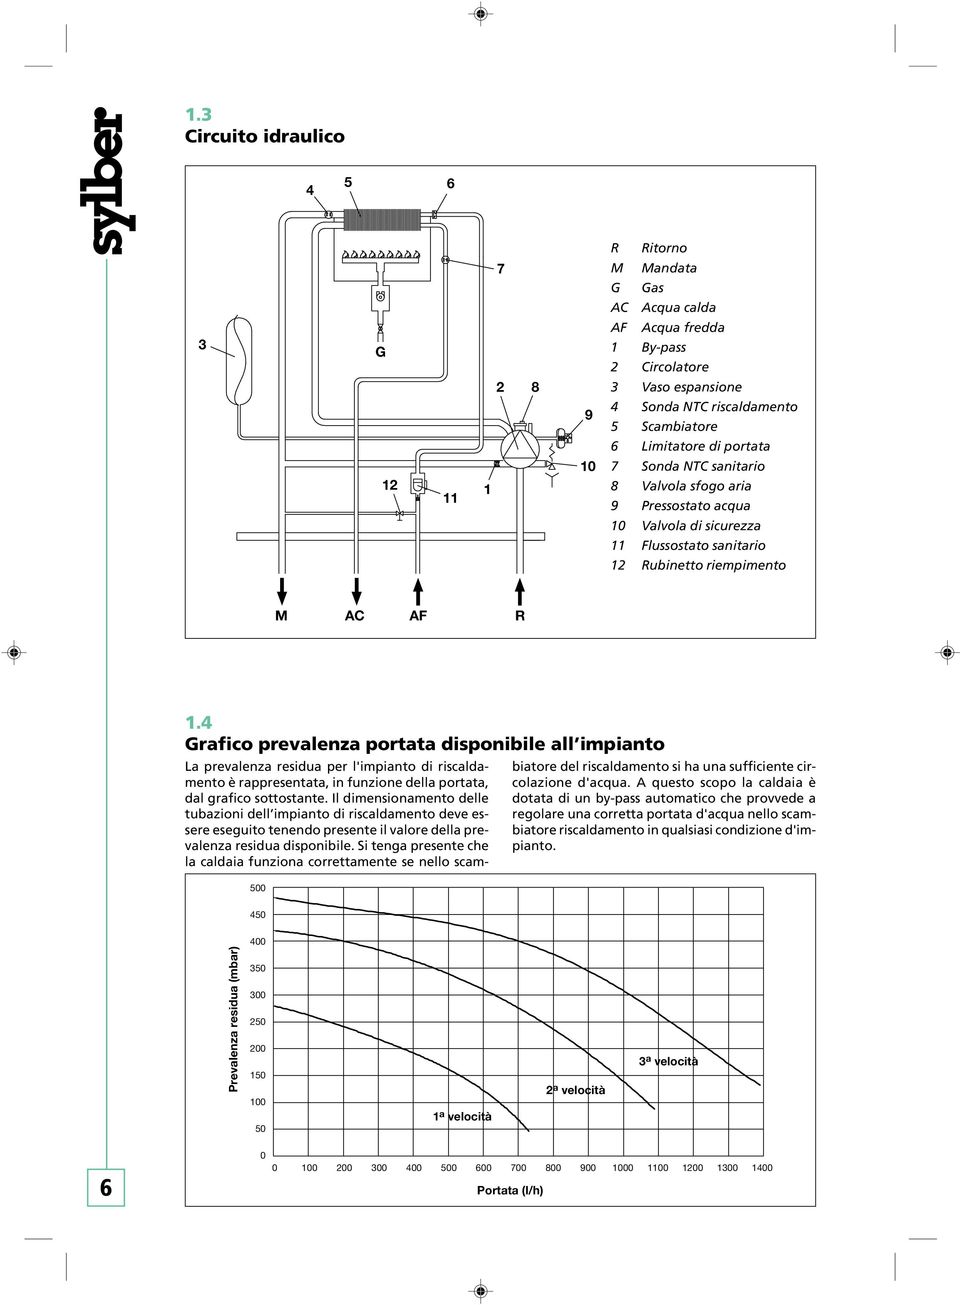 4 Grafico prevalenza portata disponibile all impianto 500 La prevalenza residua per l'impianto di riscaldamento è rappresentata, in funzione della portata, dal grafico sottostante.